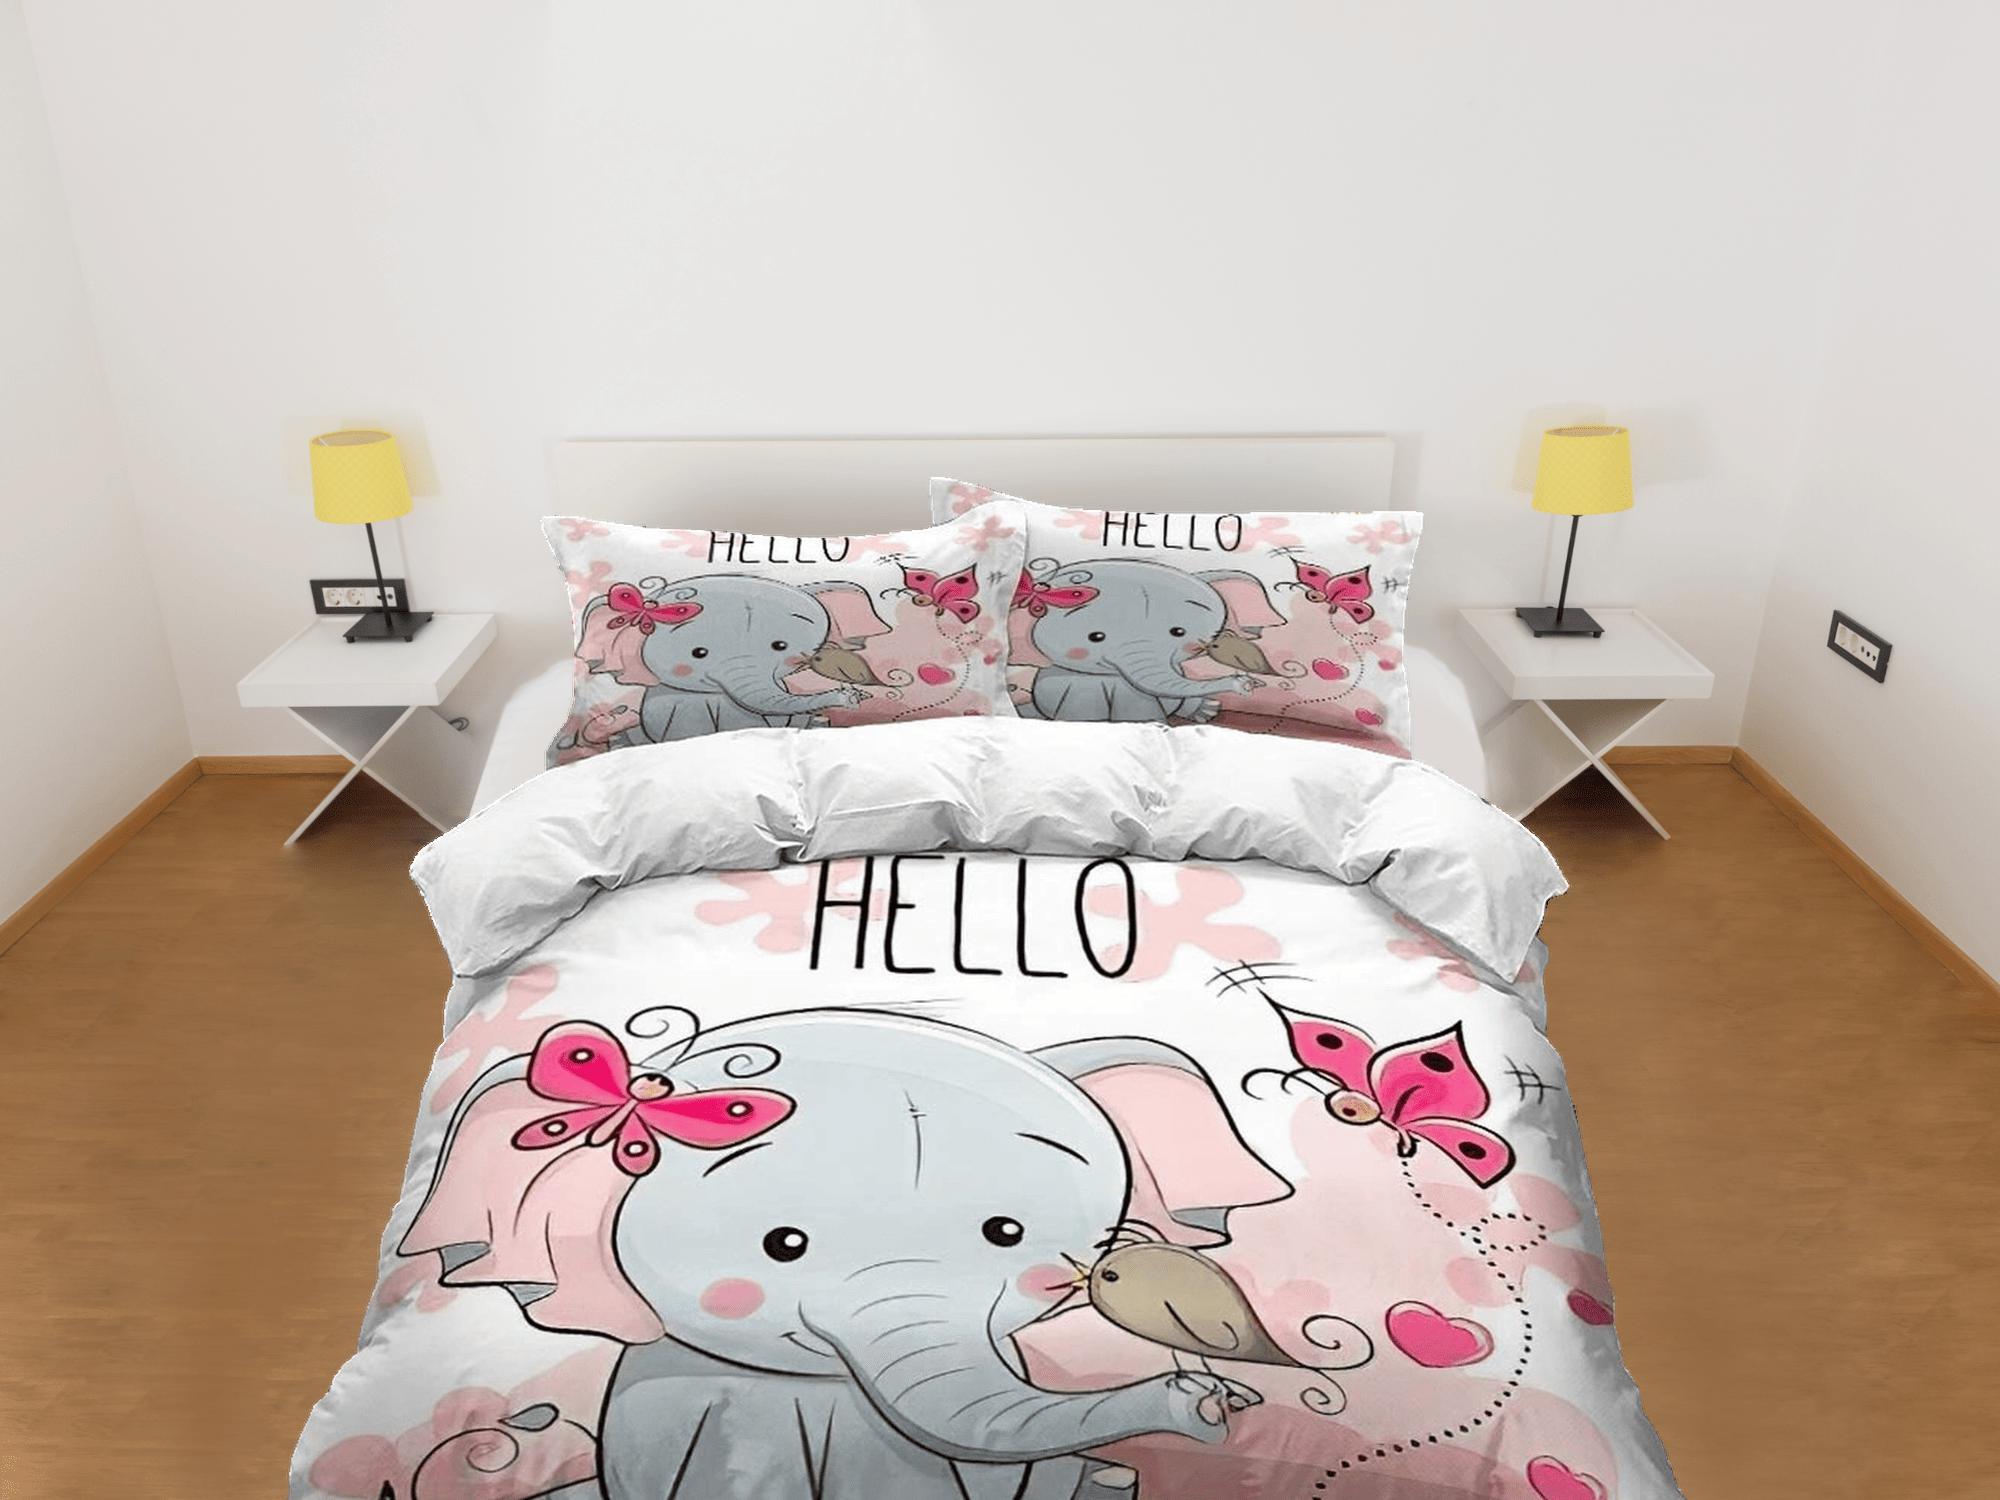 daintyduvet Hello elephant bedding cute duvet cover set, kids bedding full, nursery bed decor, elephant baby shower, girl toddler bedding